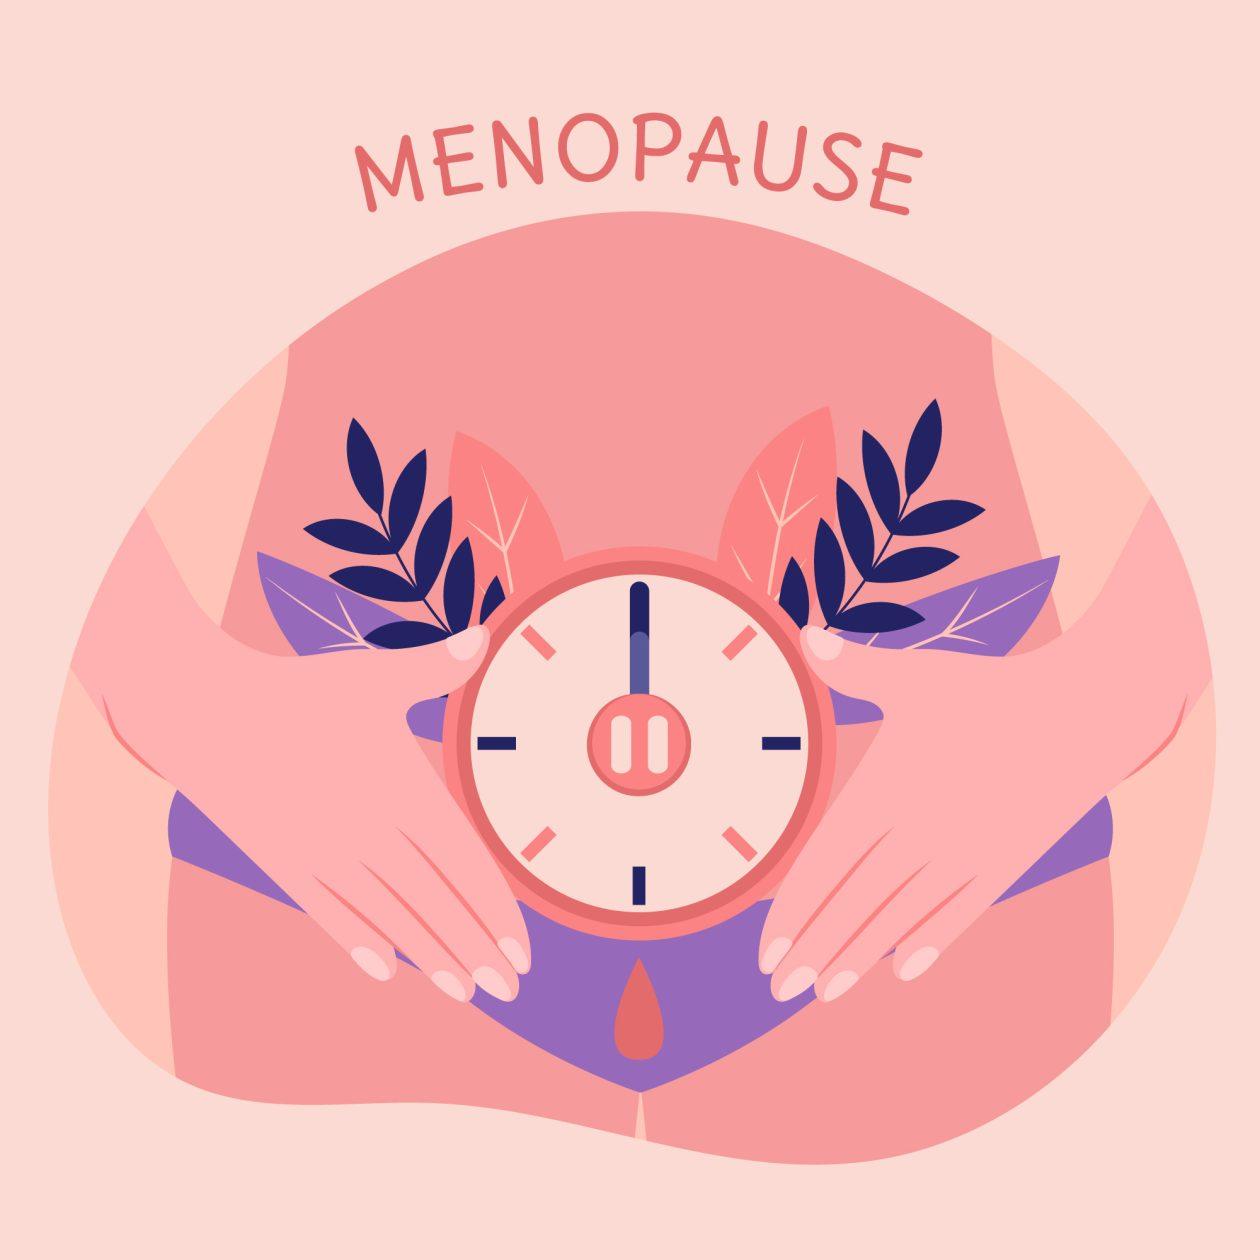 paleo diet menopause